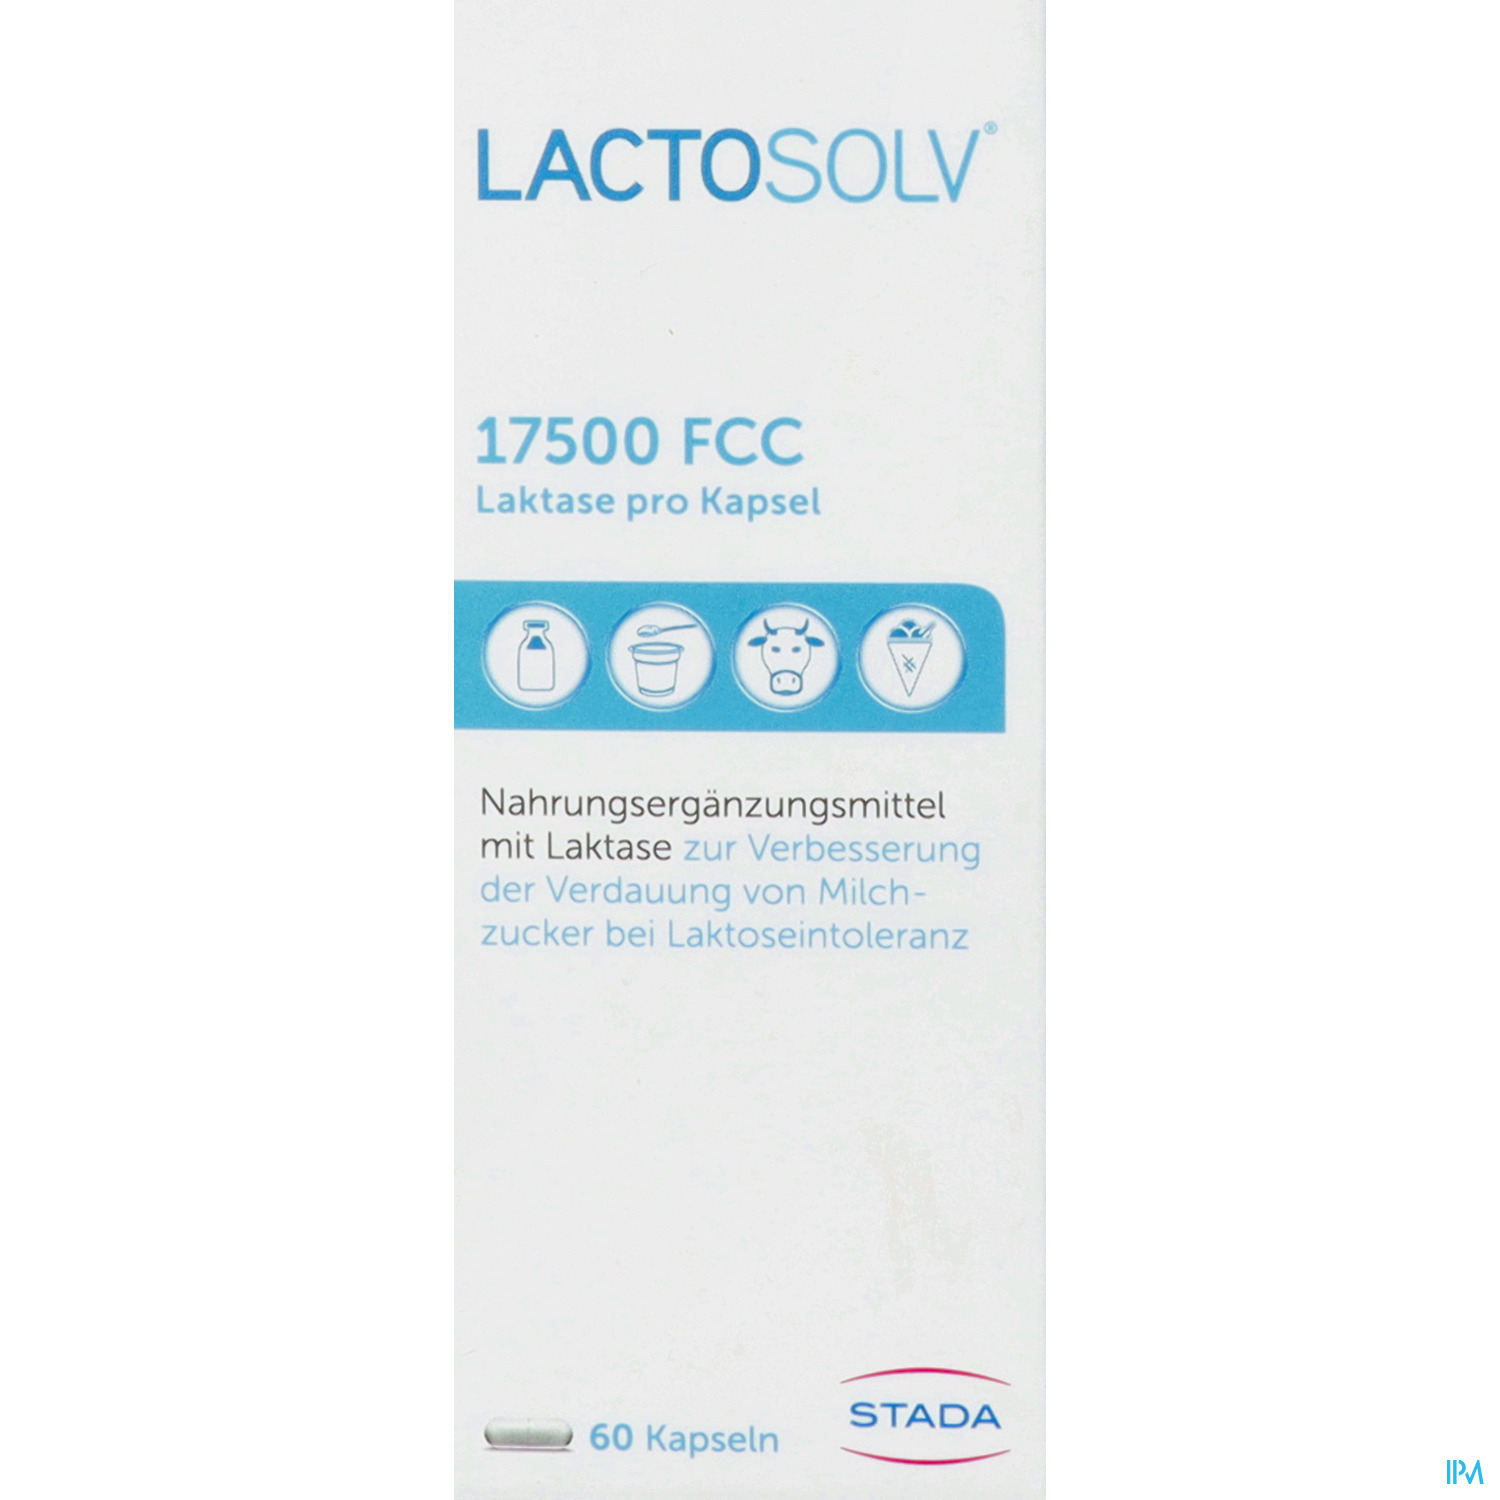 LACTOSOLV KPS 17500 FCC 60ST